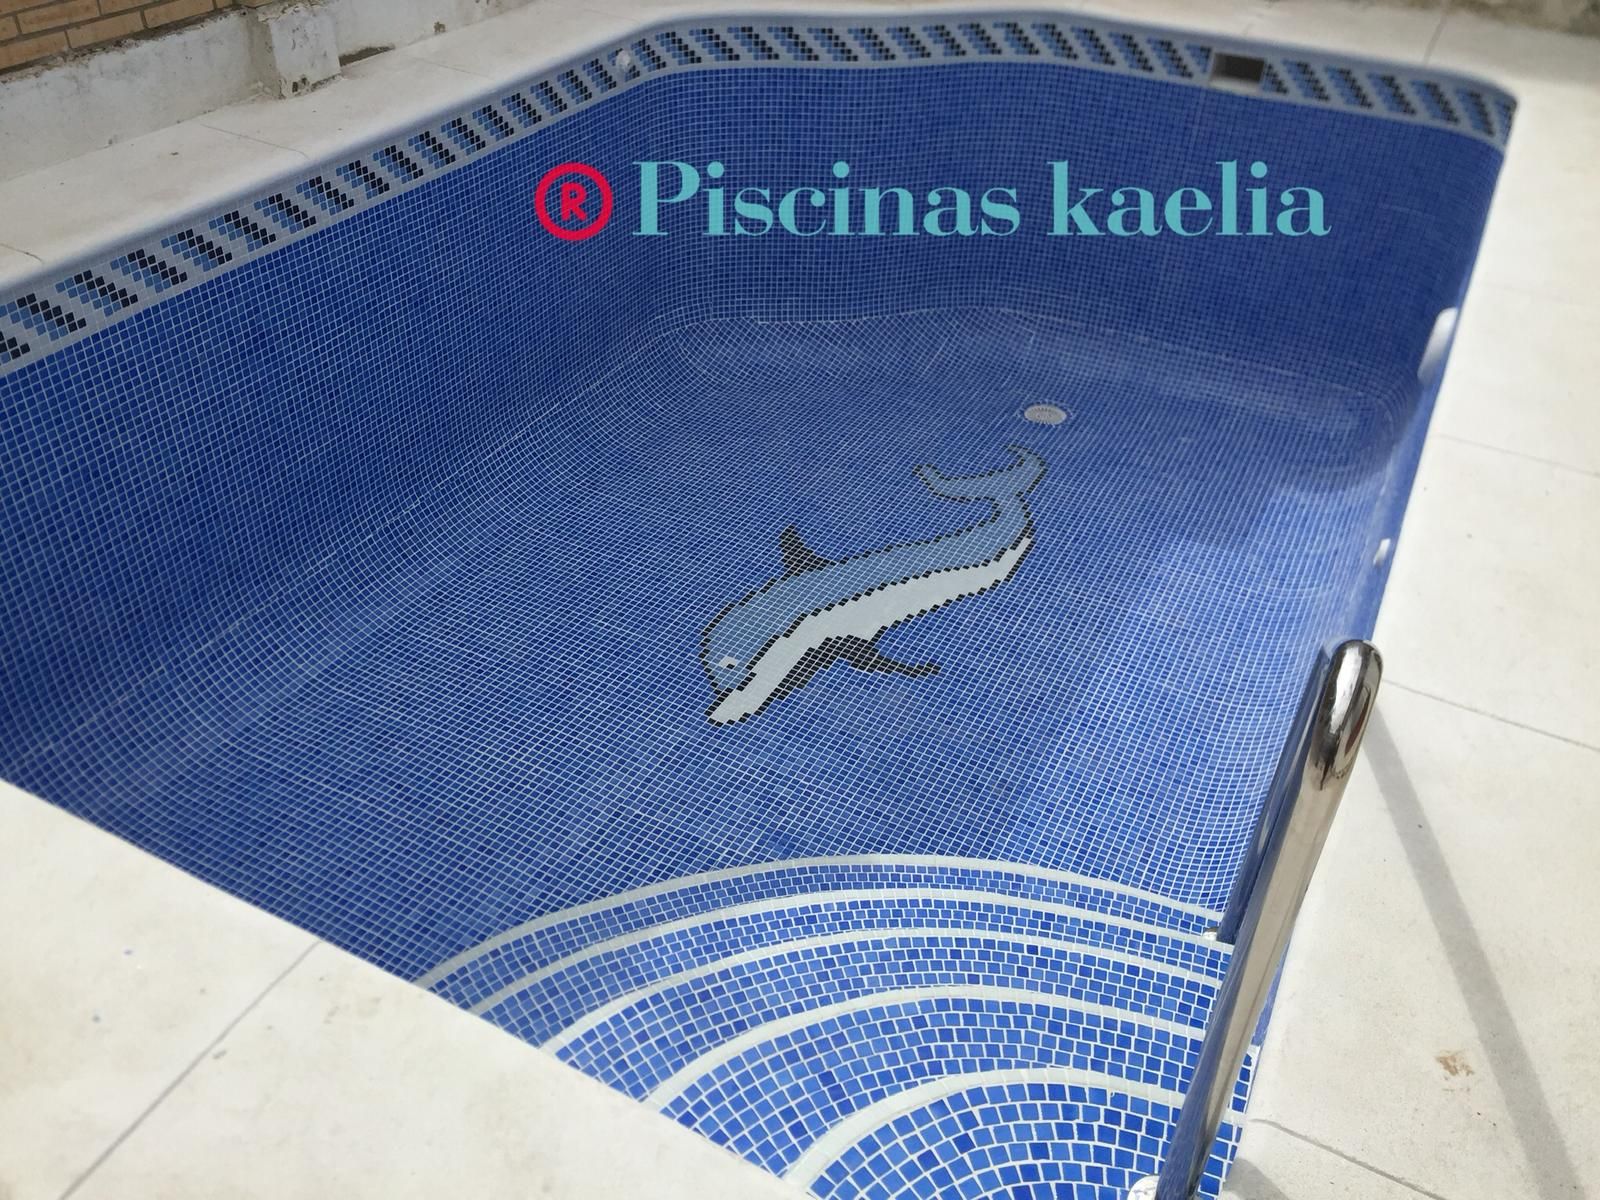 Construcción y mantenimiento de piscinas en Sevilla